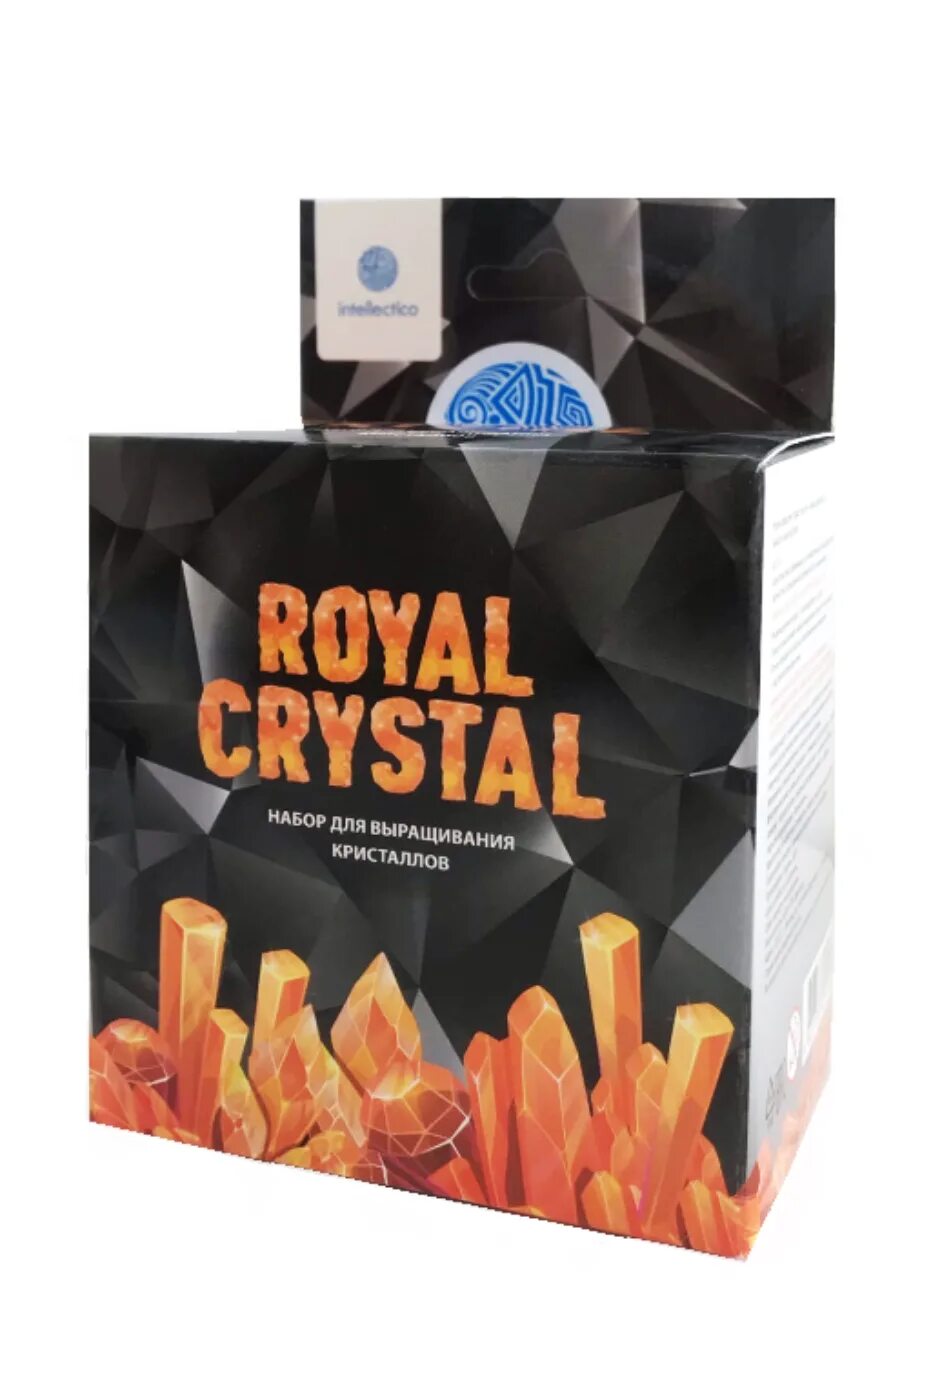 Crystal royal. Научно-познавательный набор для проведения опытов "Royal Crystal" 513. Научно-познавательный набор для проведения опытов "Royal Crystal", арт.517. Intellectico Royal Crystal. Набор для выращивания кристаллов.